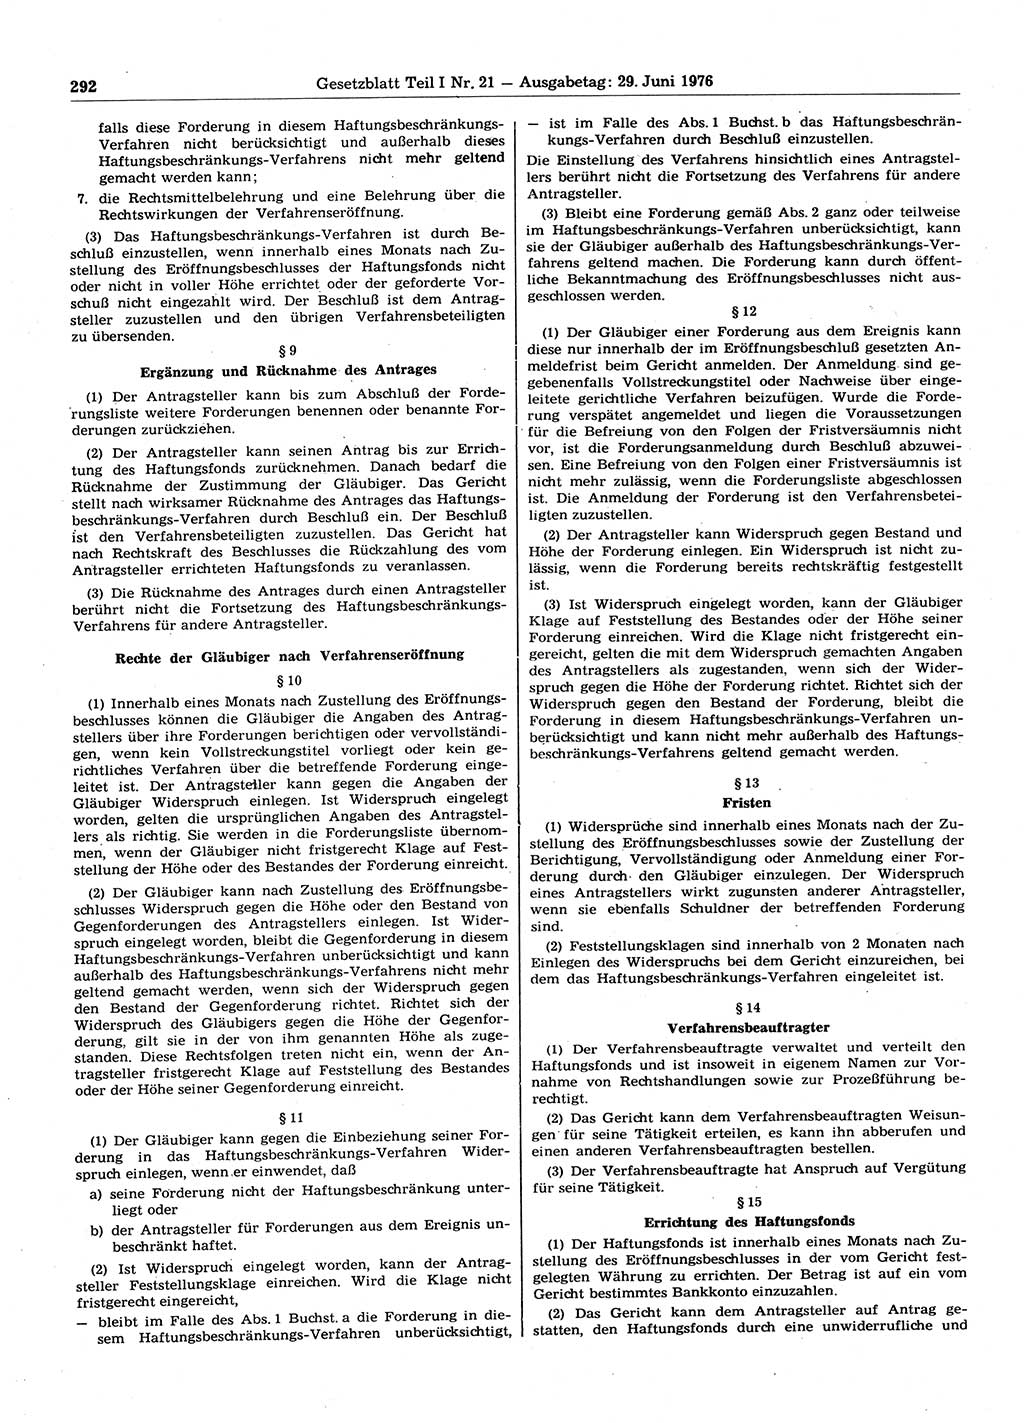 Gesetzblatt (GBl.) der Deutschen Demokratischen Republik (DDR) Teil Ⅰ 1976, Seite 292 (GBl. DDR Ⅰ 1976, S. 292)